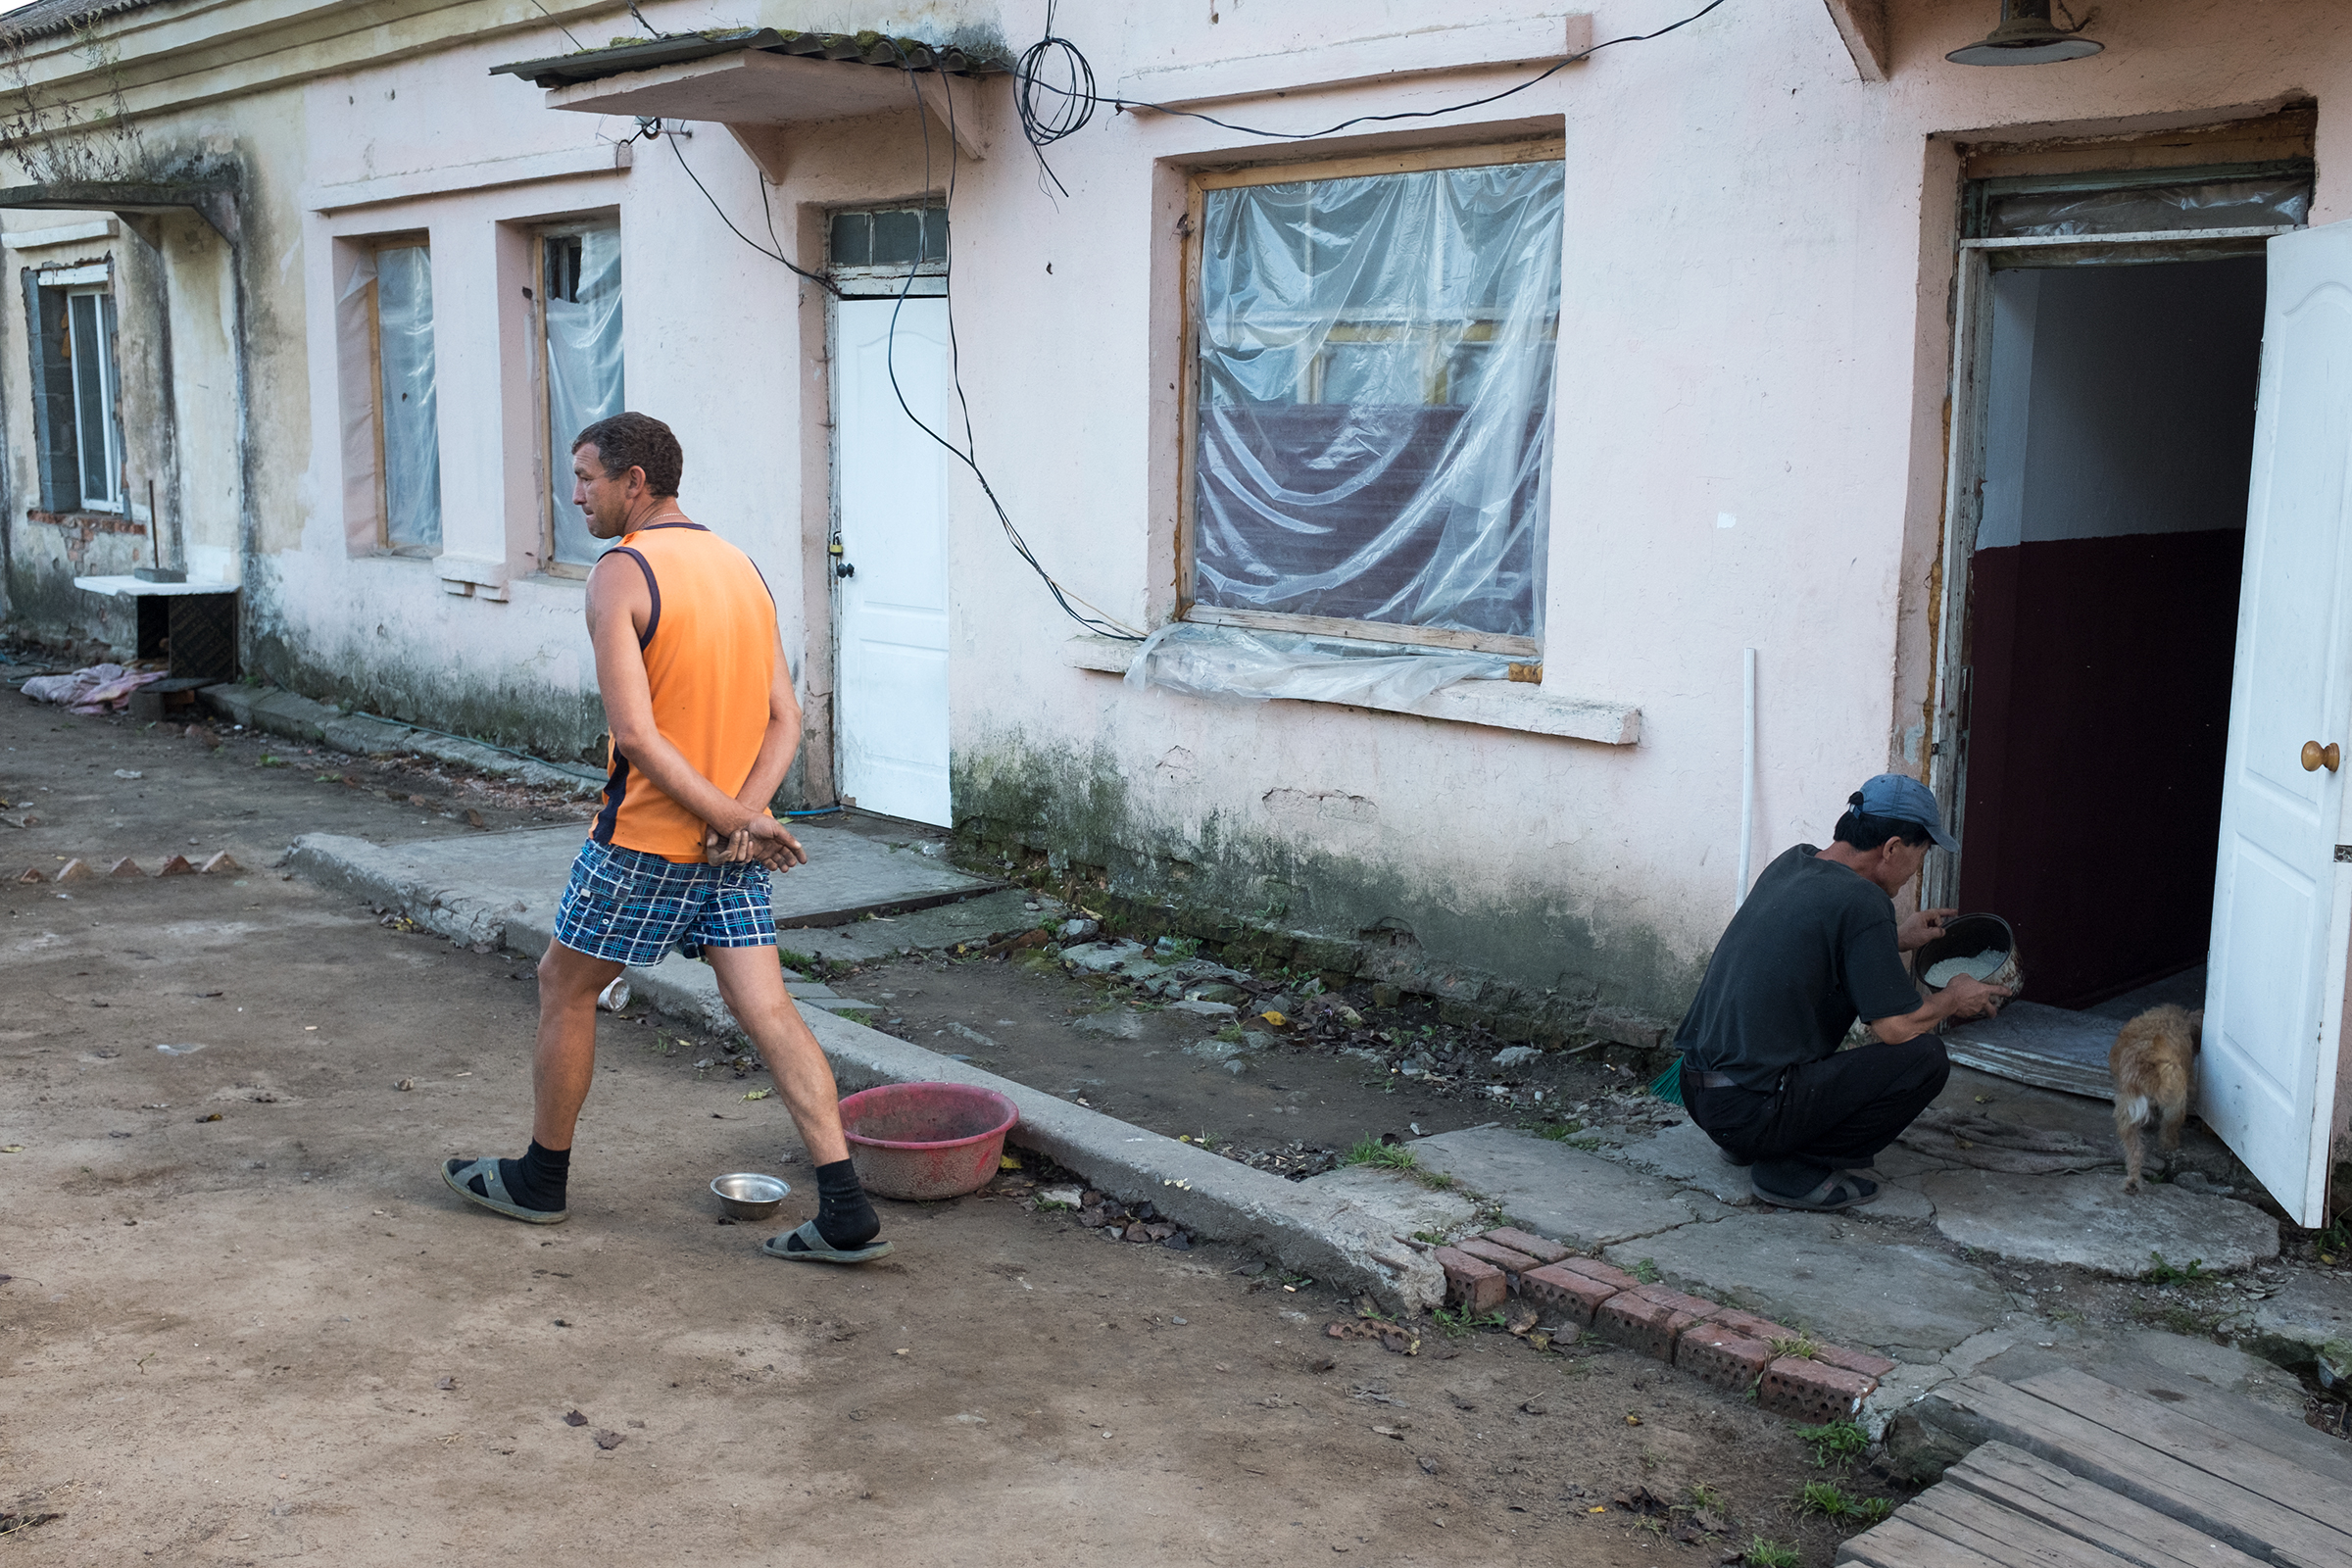 Александр Егупов (на фото слева) из Тамбова попал в Хасанский район благодаря службе в погранвойсках. Здесь он женился, а год назад ему выделили в поселке половину одноэтажного дома. Во второй половине располагается общежитие северокорейцев: сейчас в двухкомнатной квартире живет около 15 человек. Они работают на стройке в поселке.